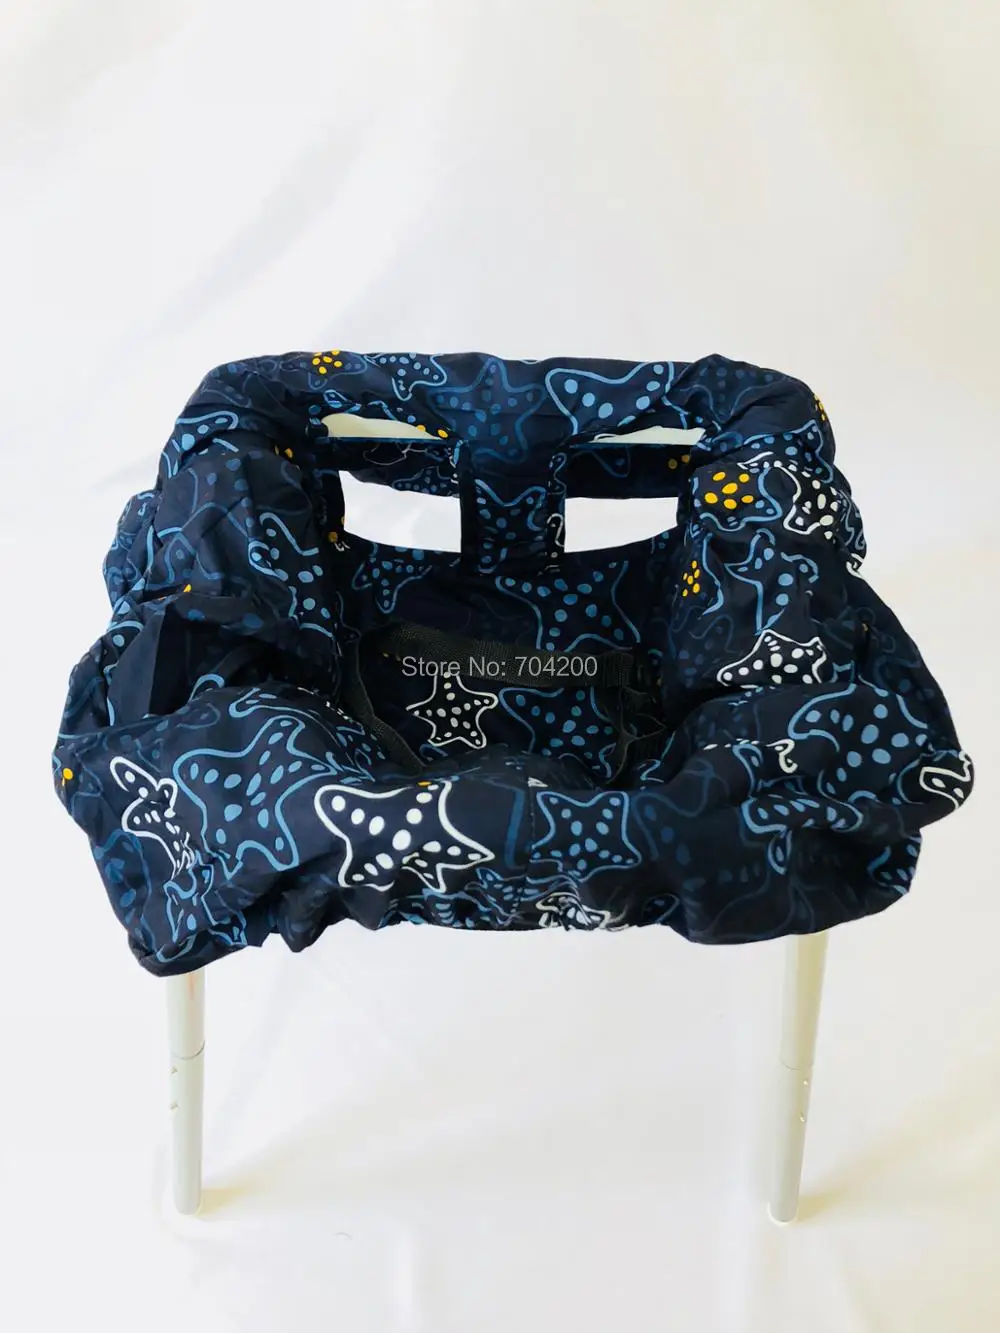 5 стилей-Морская звезда морской слон, голубое платье в горошек и с Многофункциональный 2-в-1 корзину покрытие высокий стул крышка для малышей и младенцев